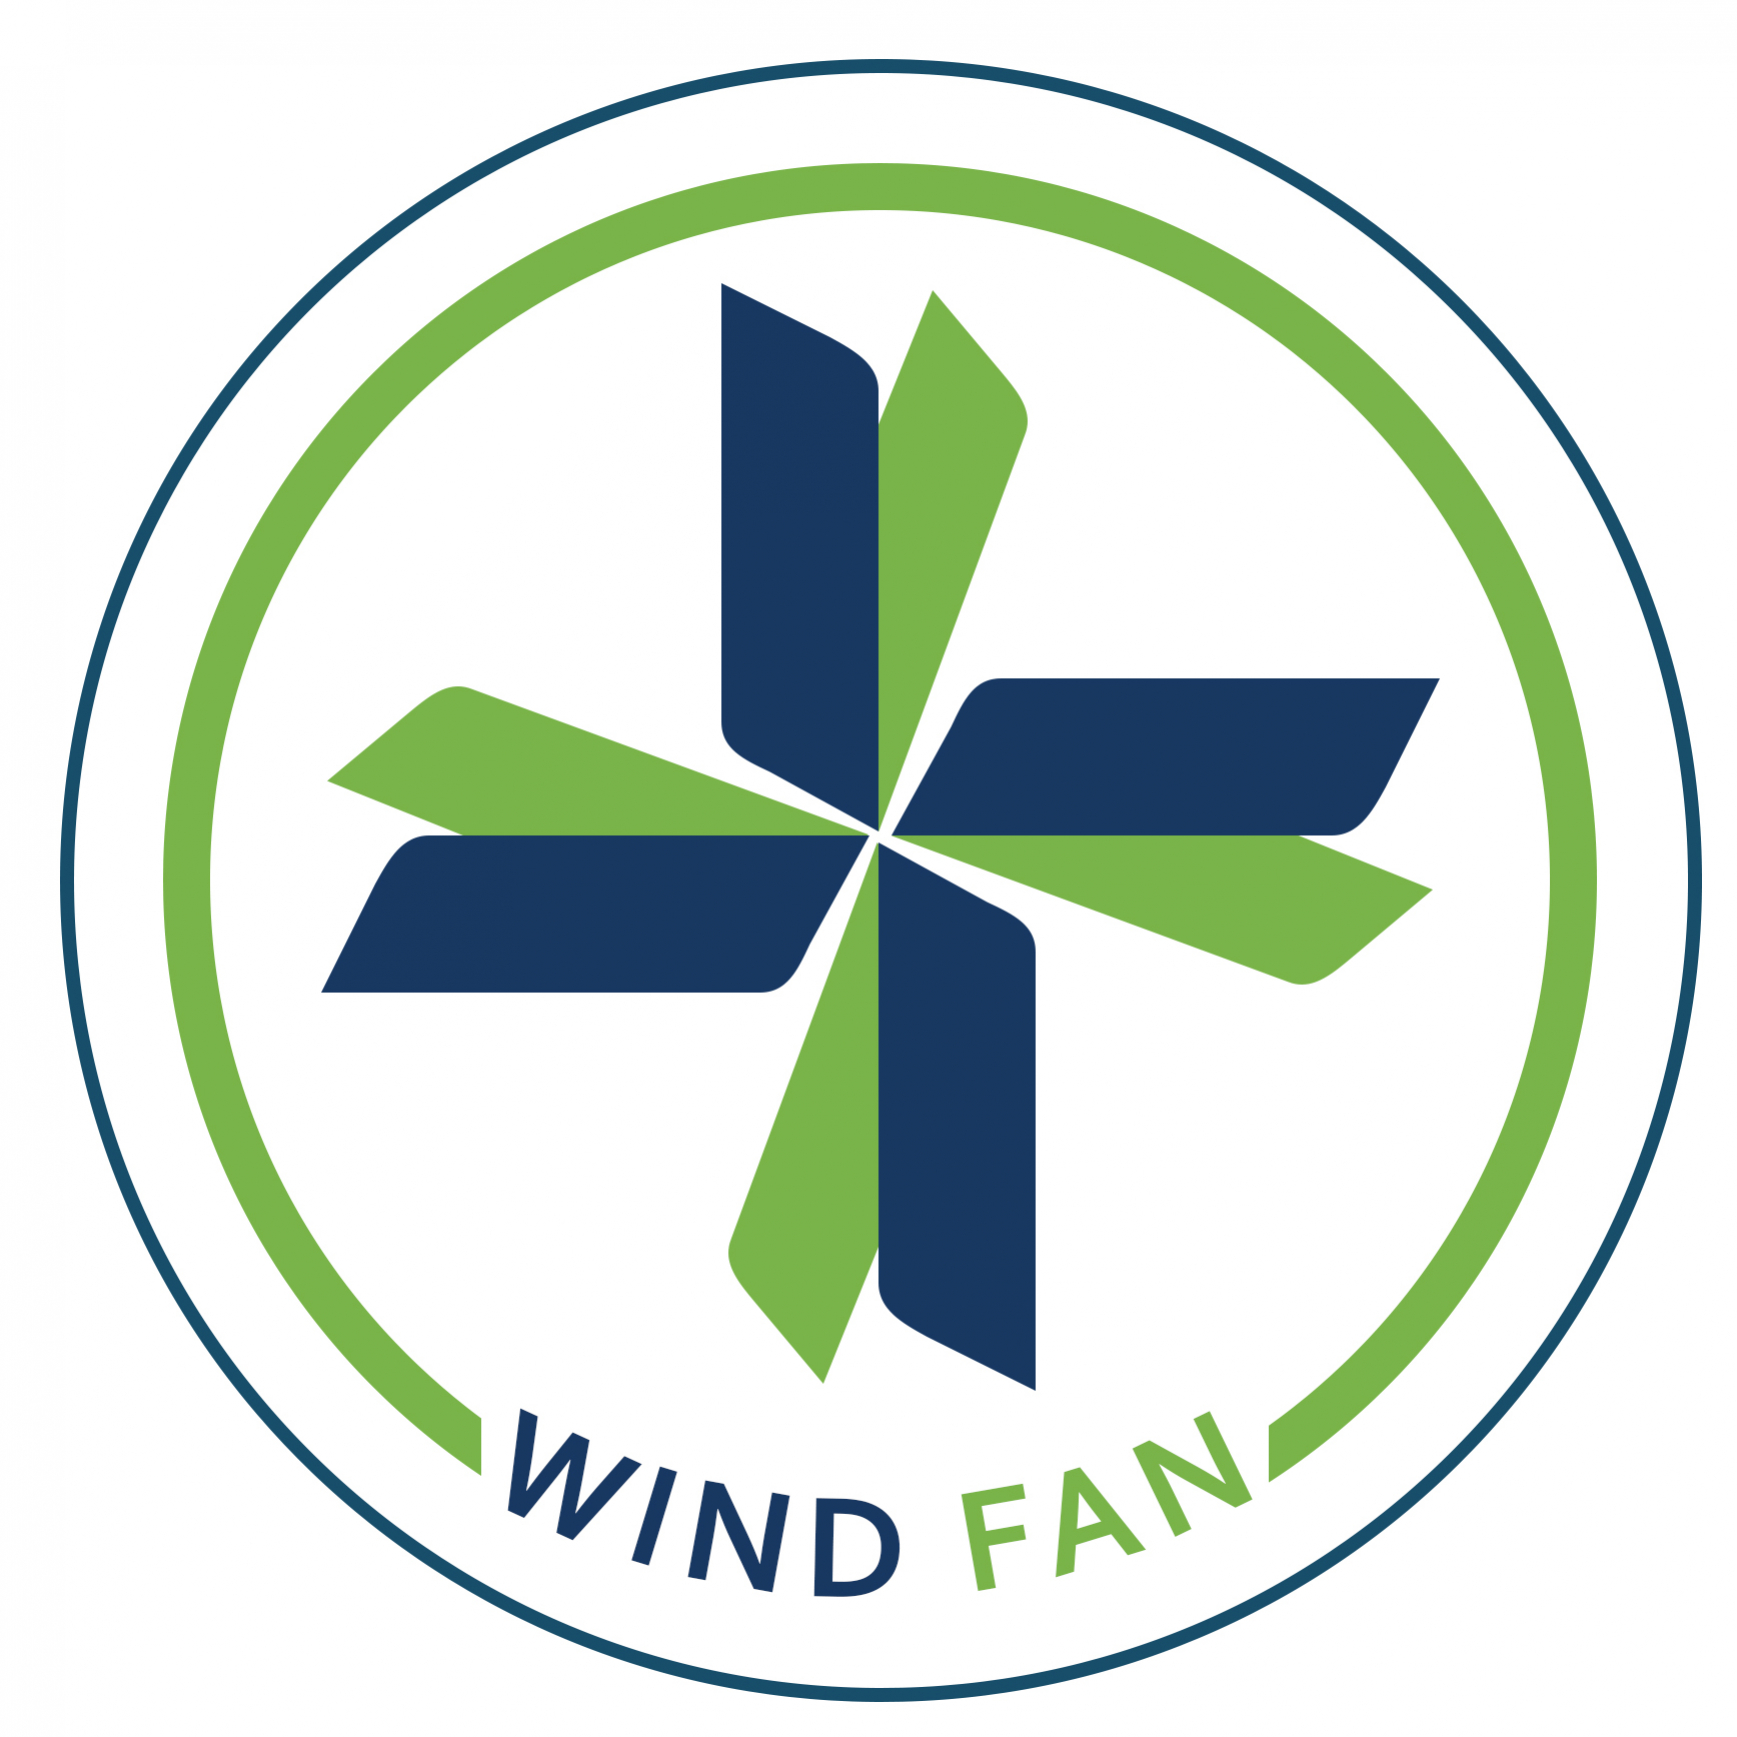 windfan